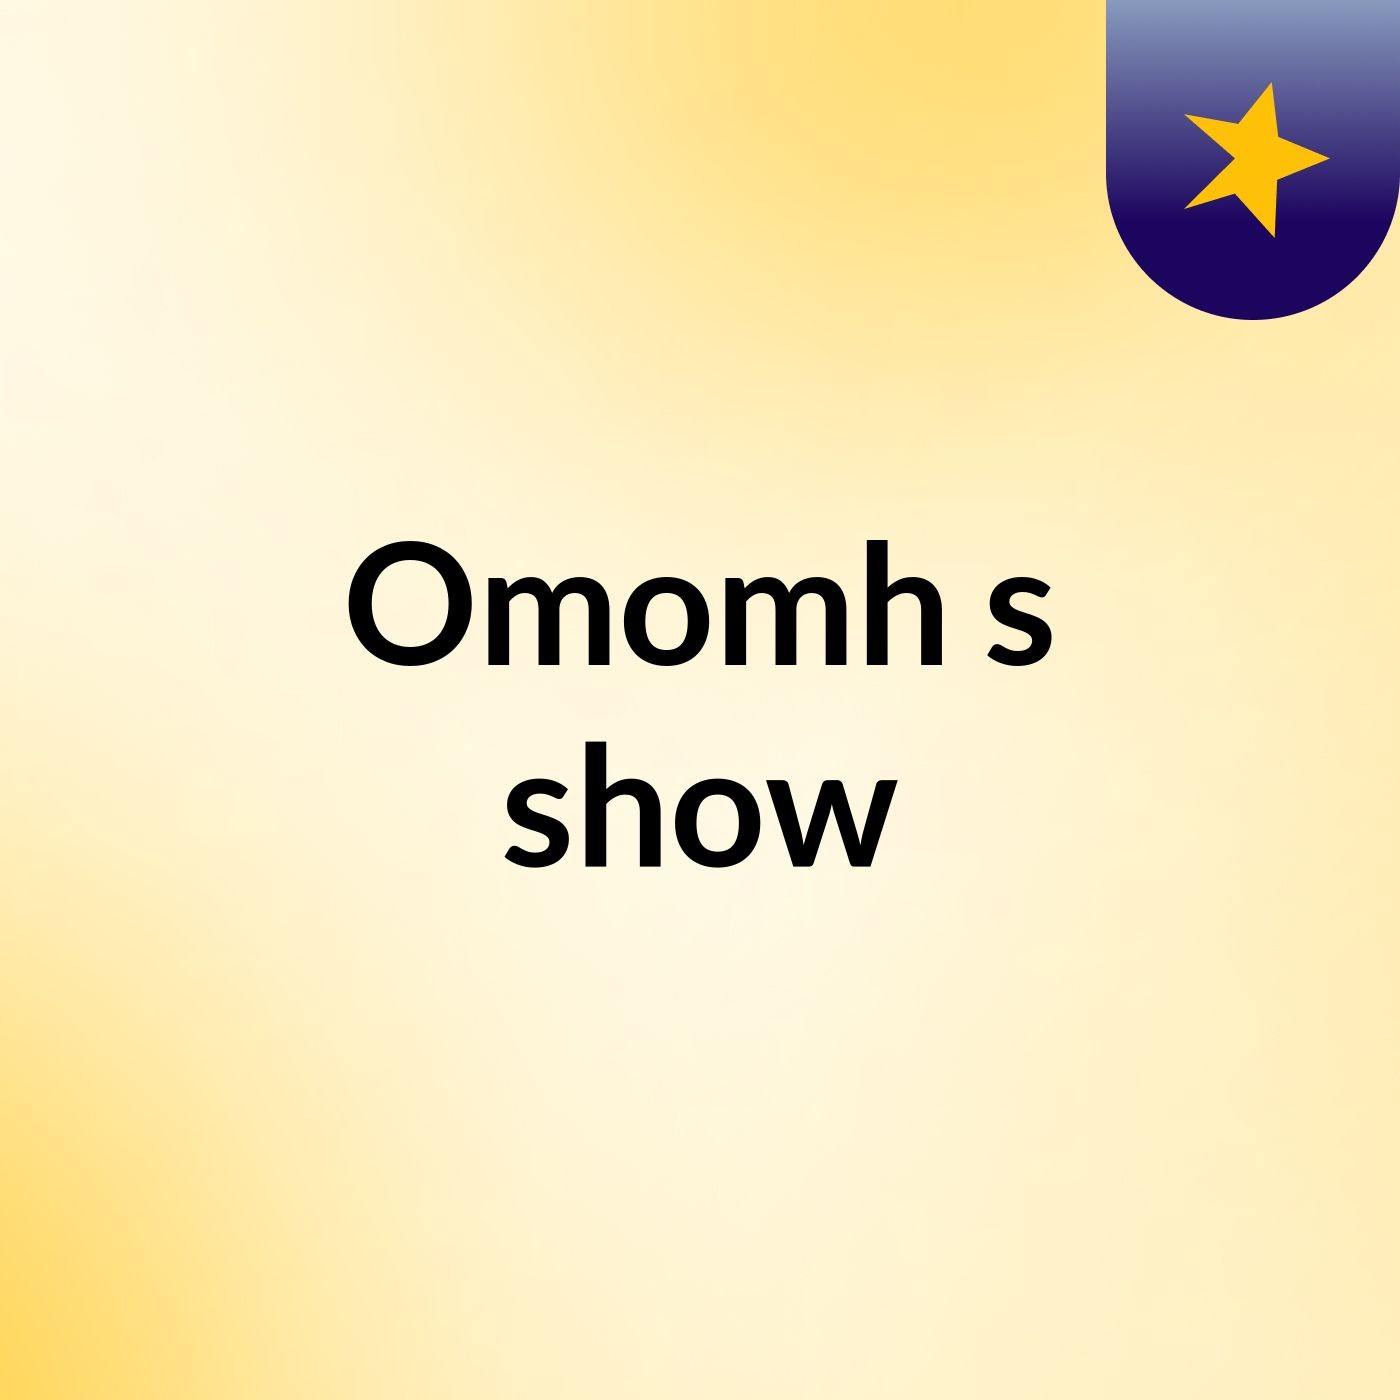 Omomh's show